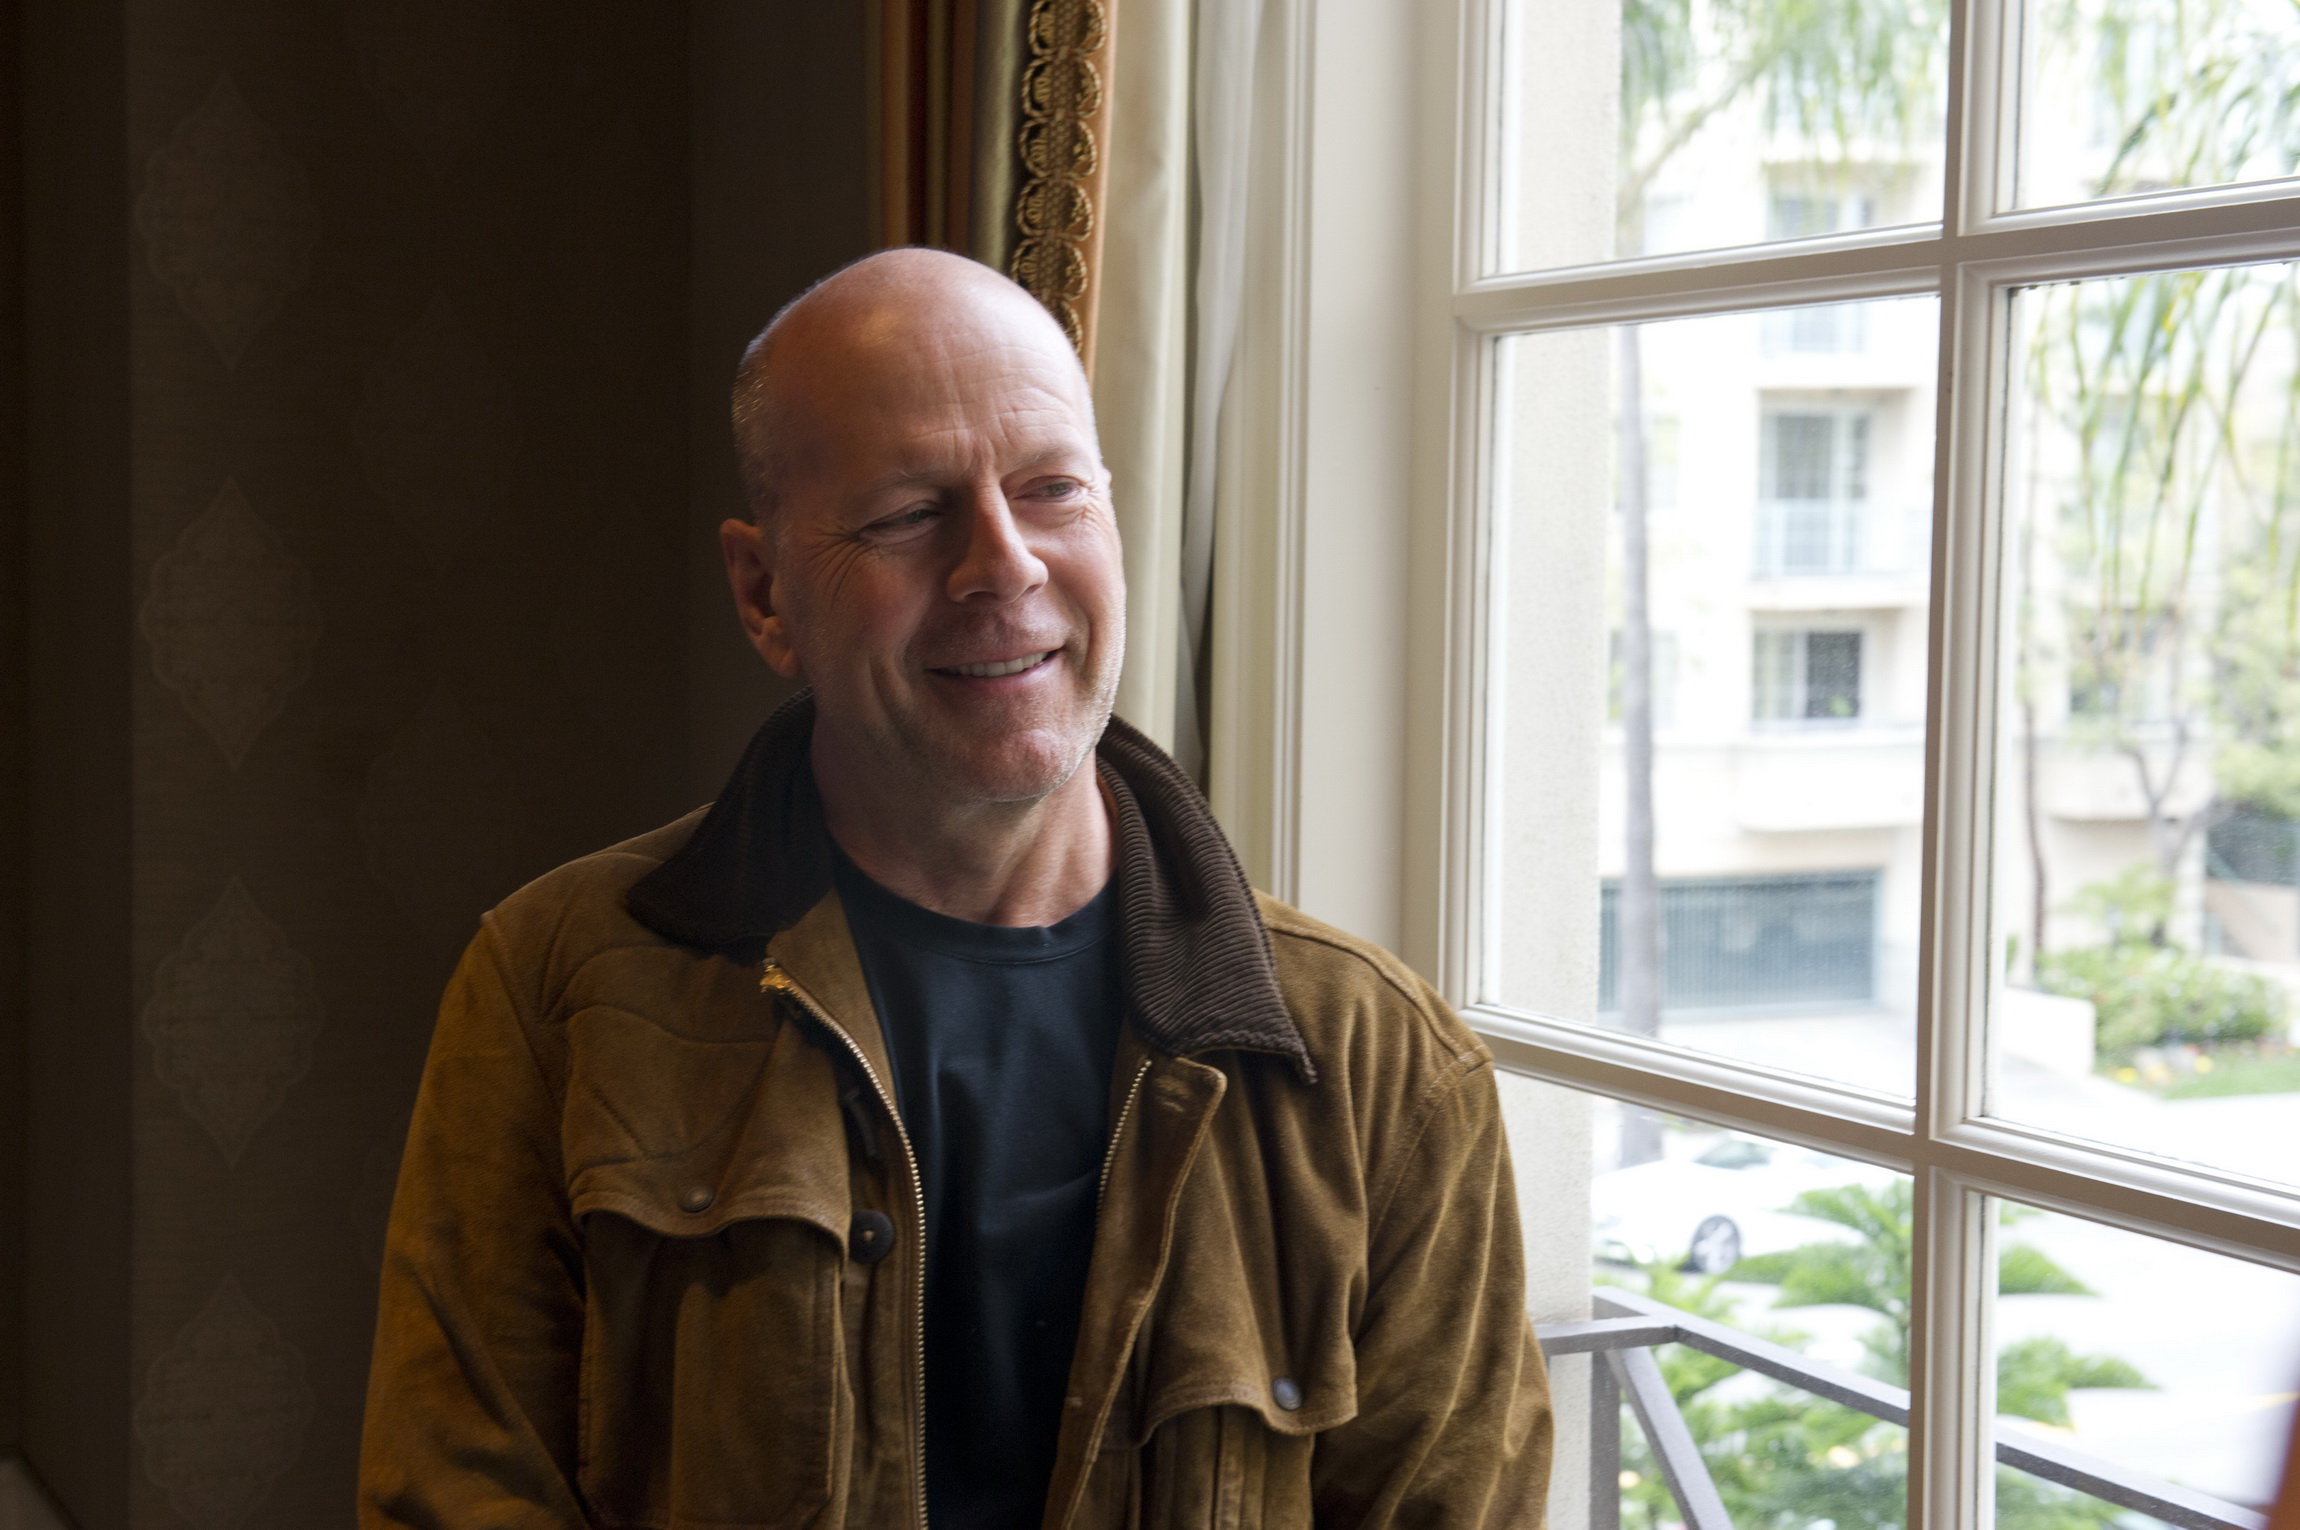 Bruce Willis a fost diagnosticat cu demență frontotemporală. Cum se manifestă boala actorului